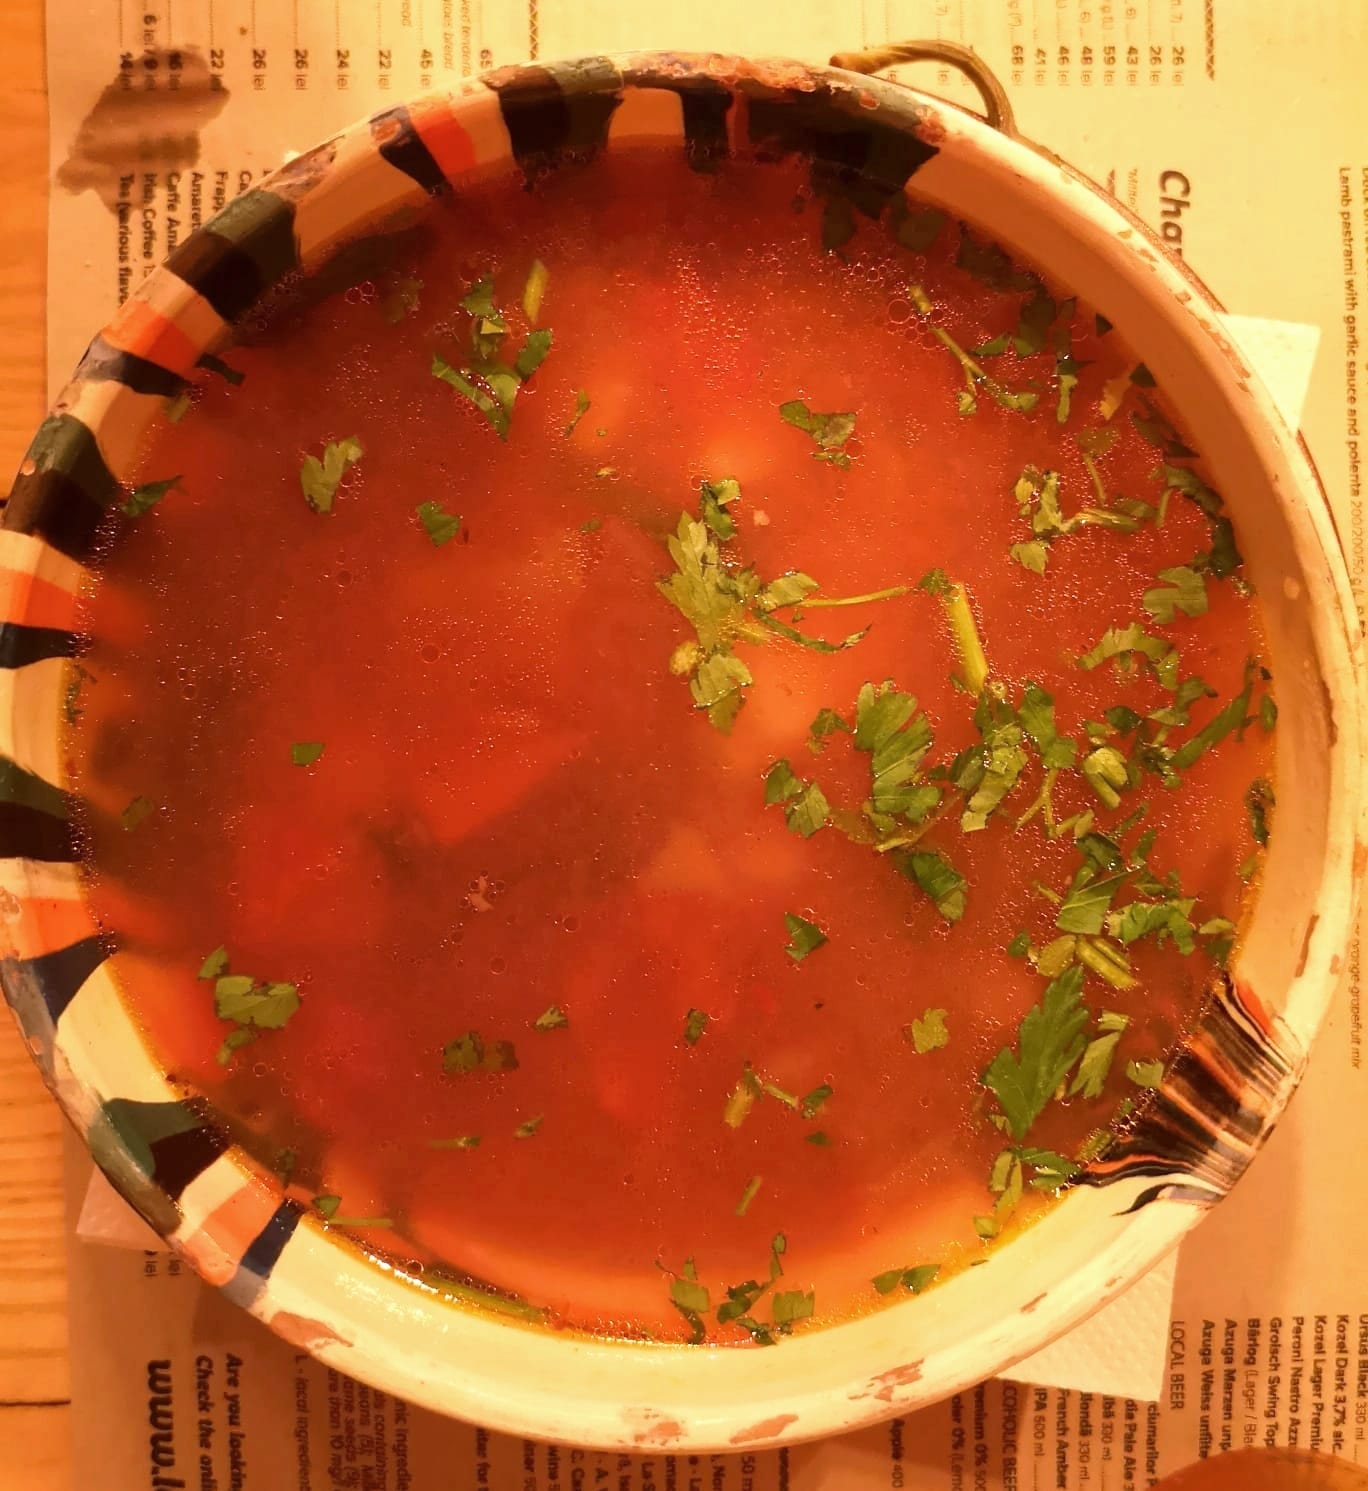 Ciorba soup in Romania